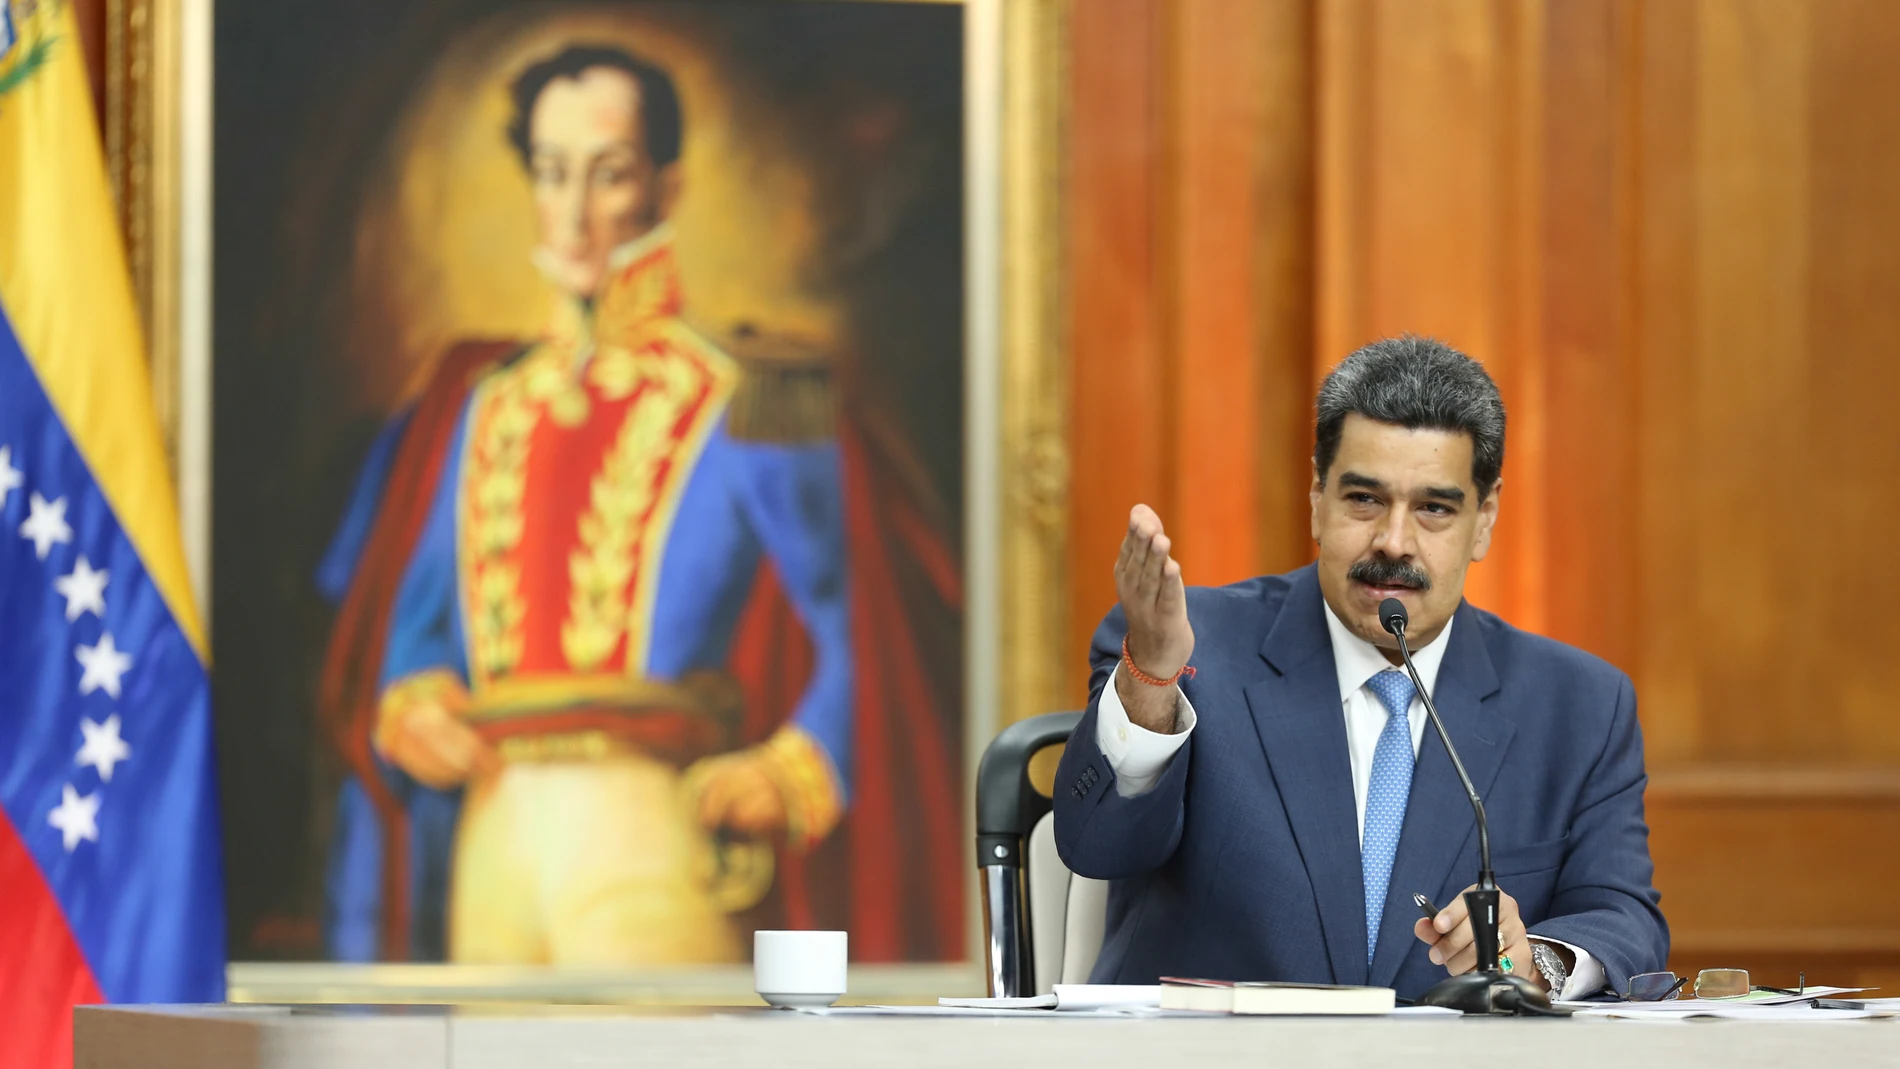 Nicolas Maduro press conference in Caracas